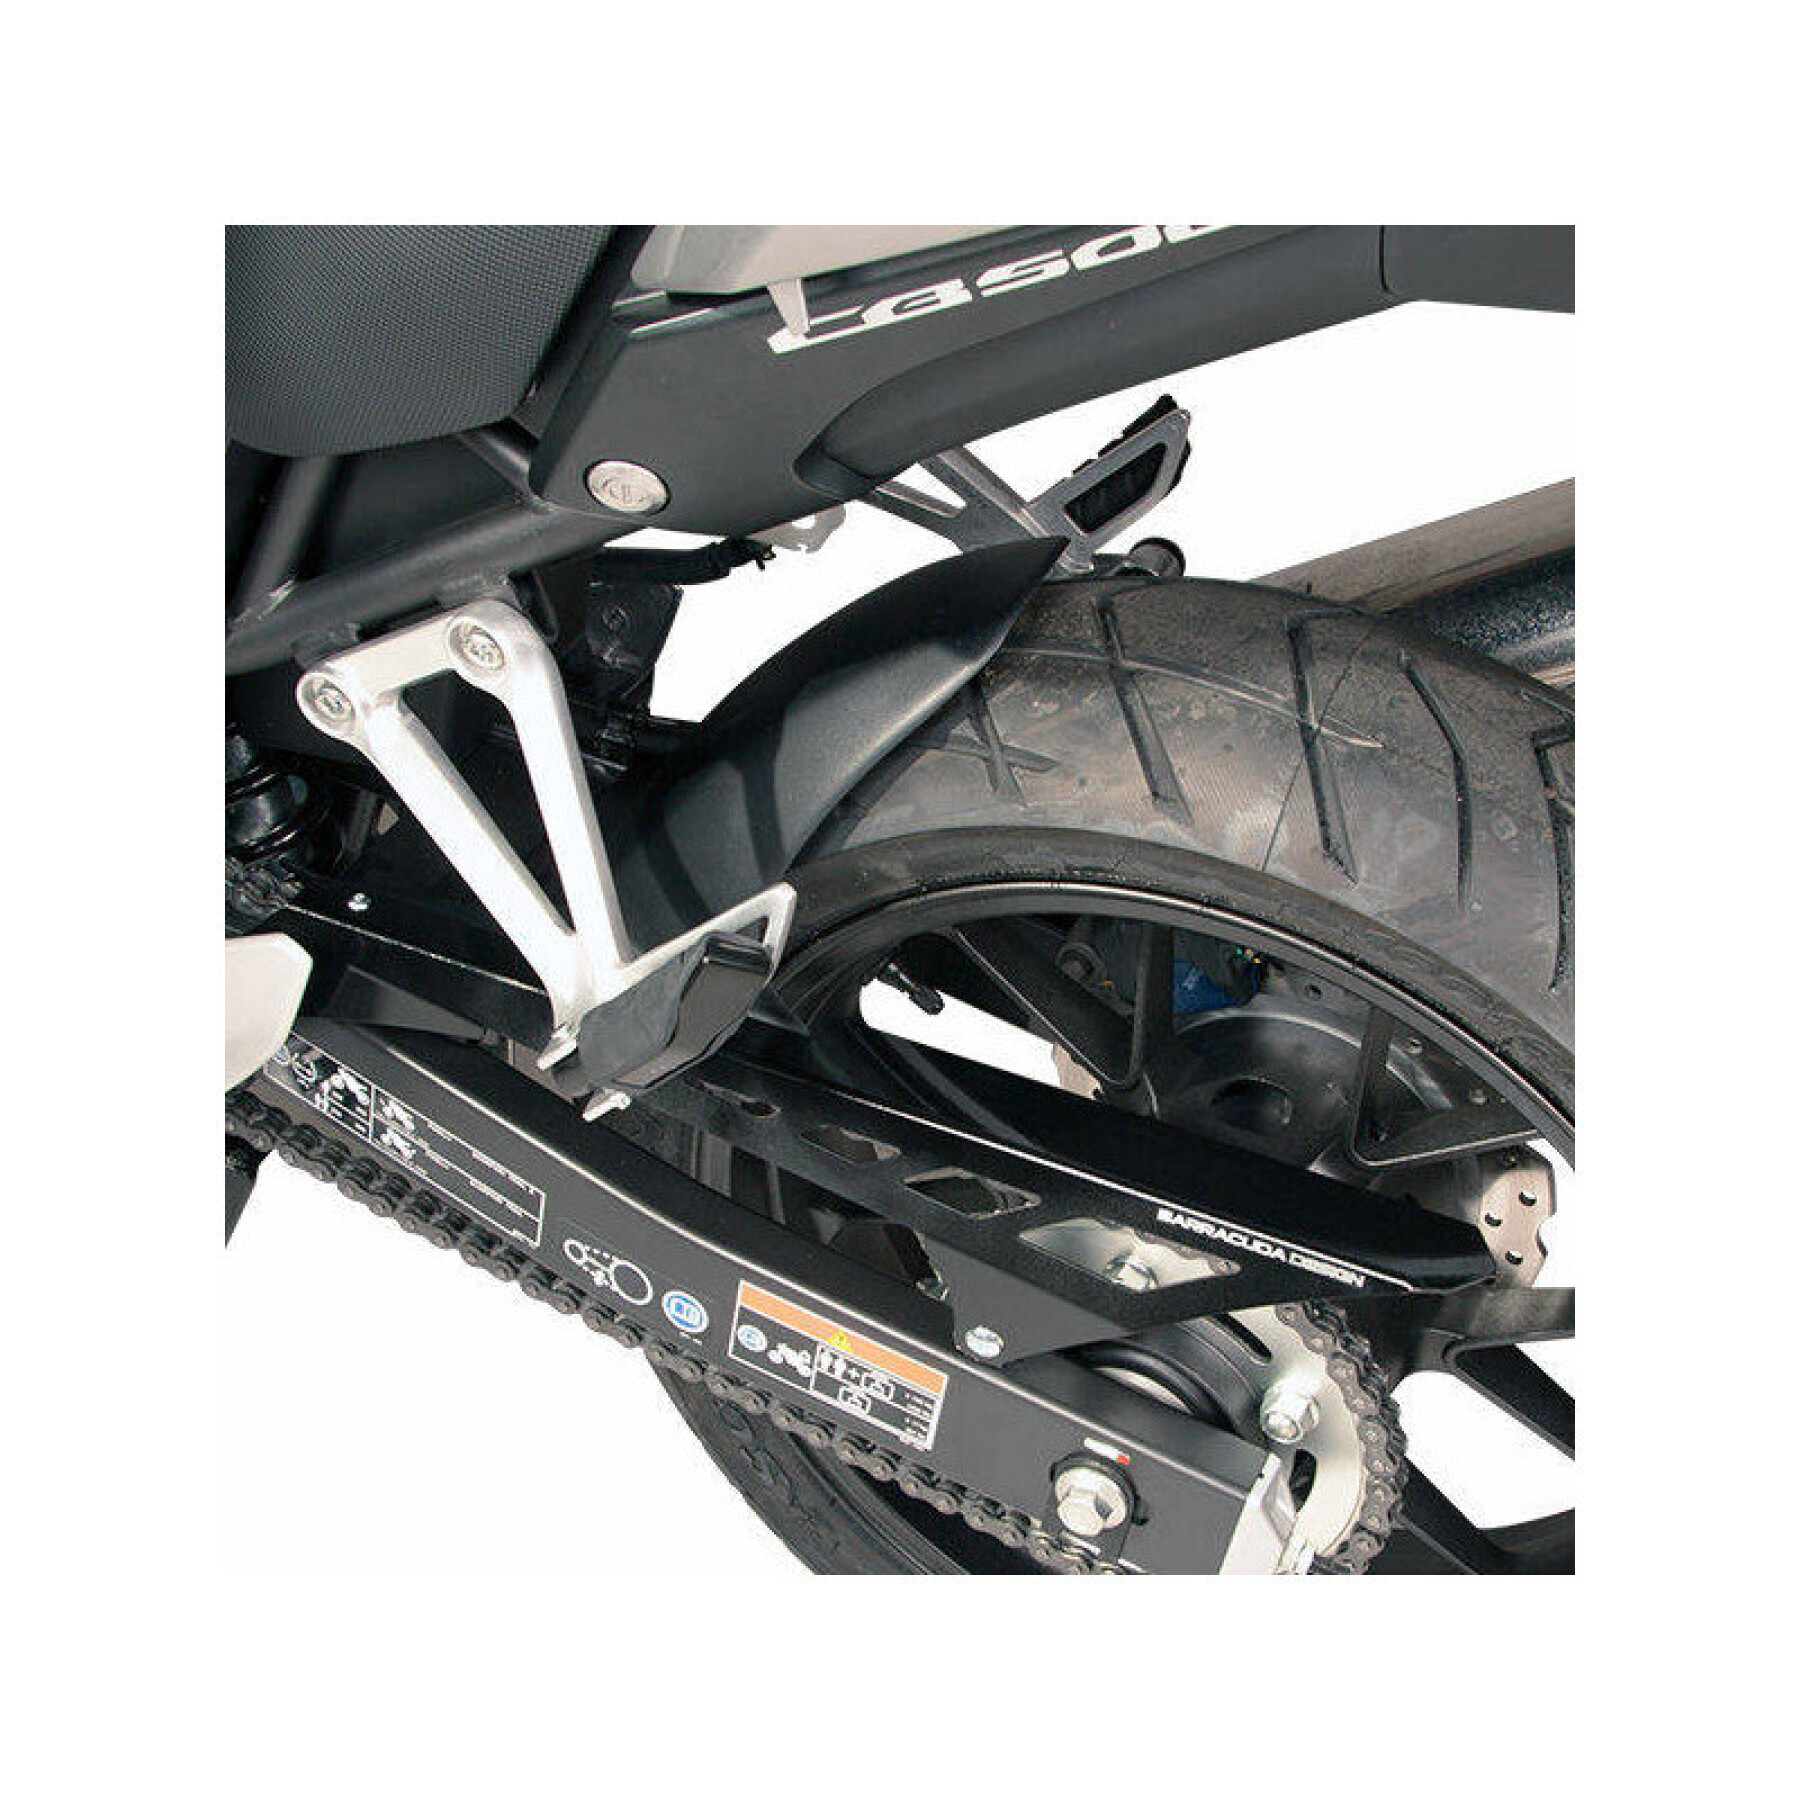 Motorcycle rear mudguards Barracuda Honda Cbr 500r